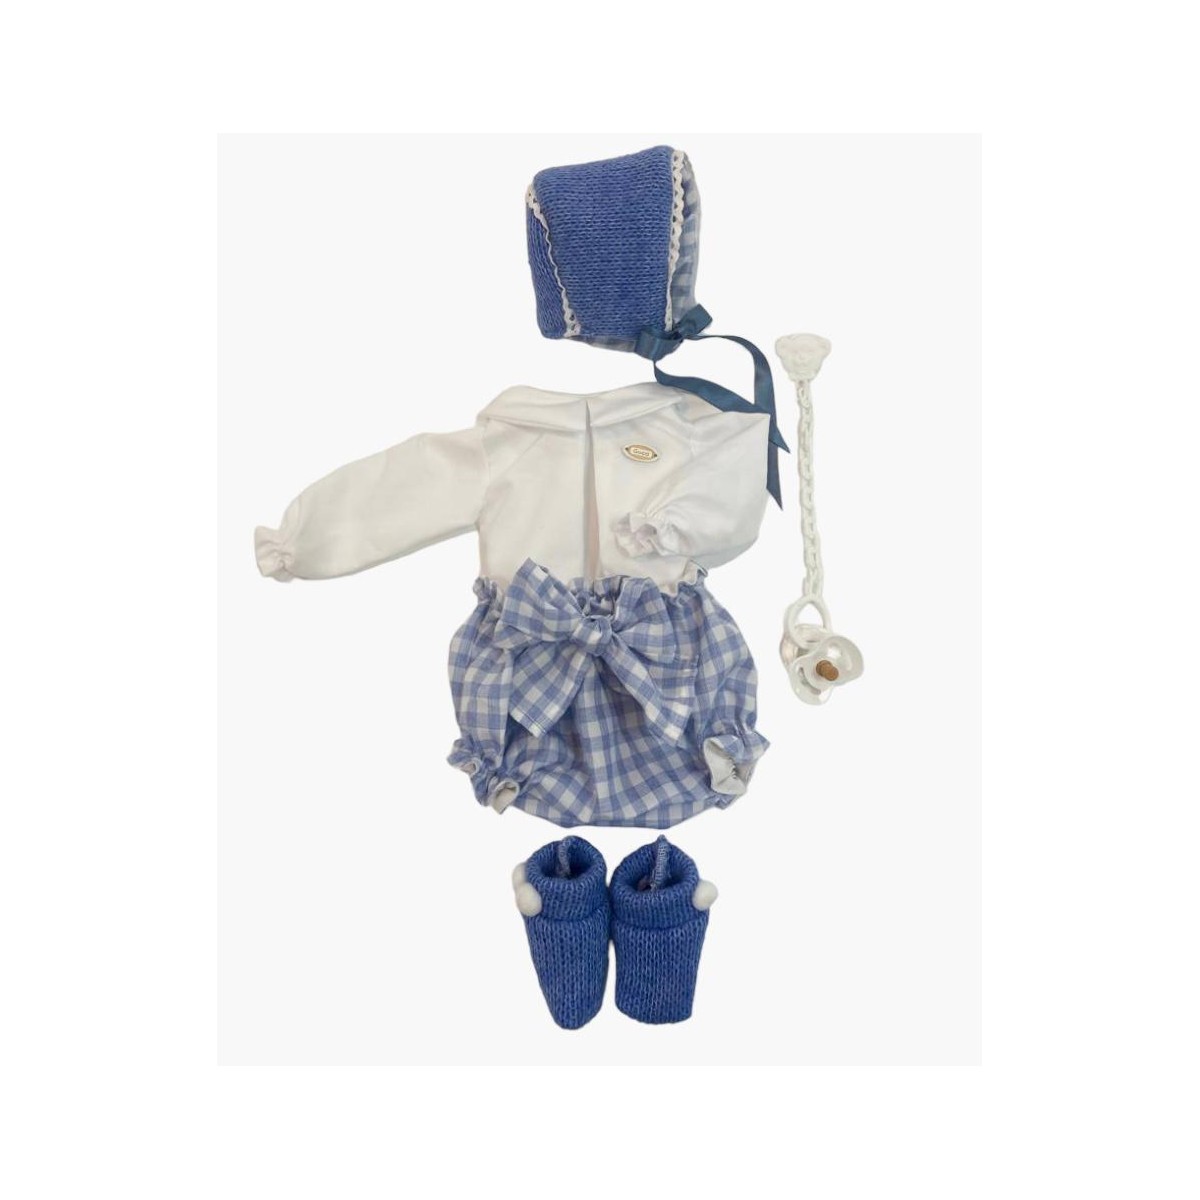 Complementos de roupa para boneca Reborn 46 cm. Guca 10020 - Juguetilandia